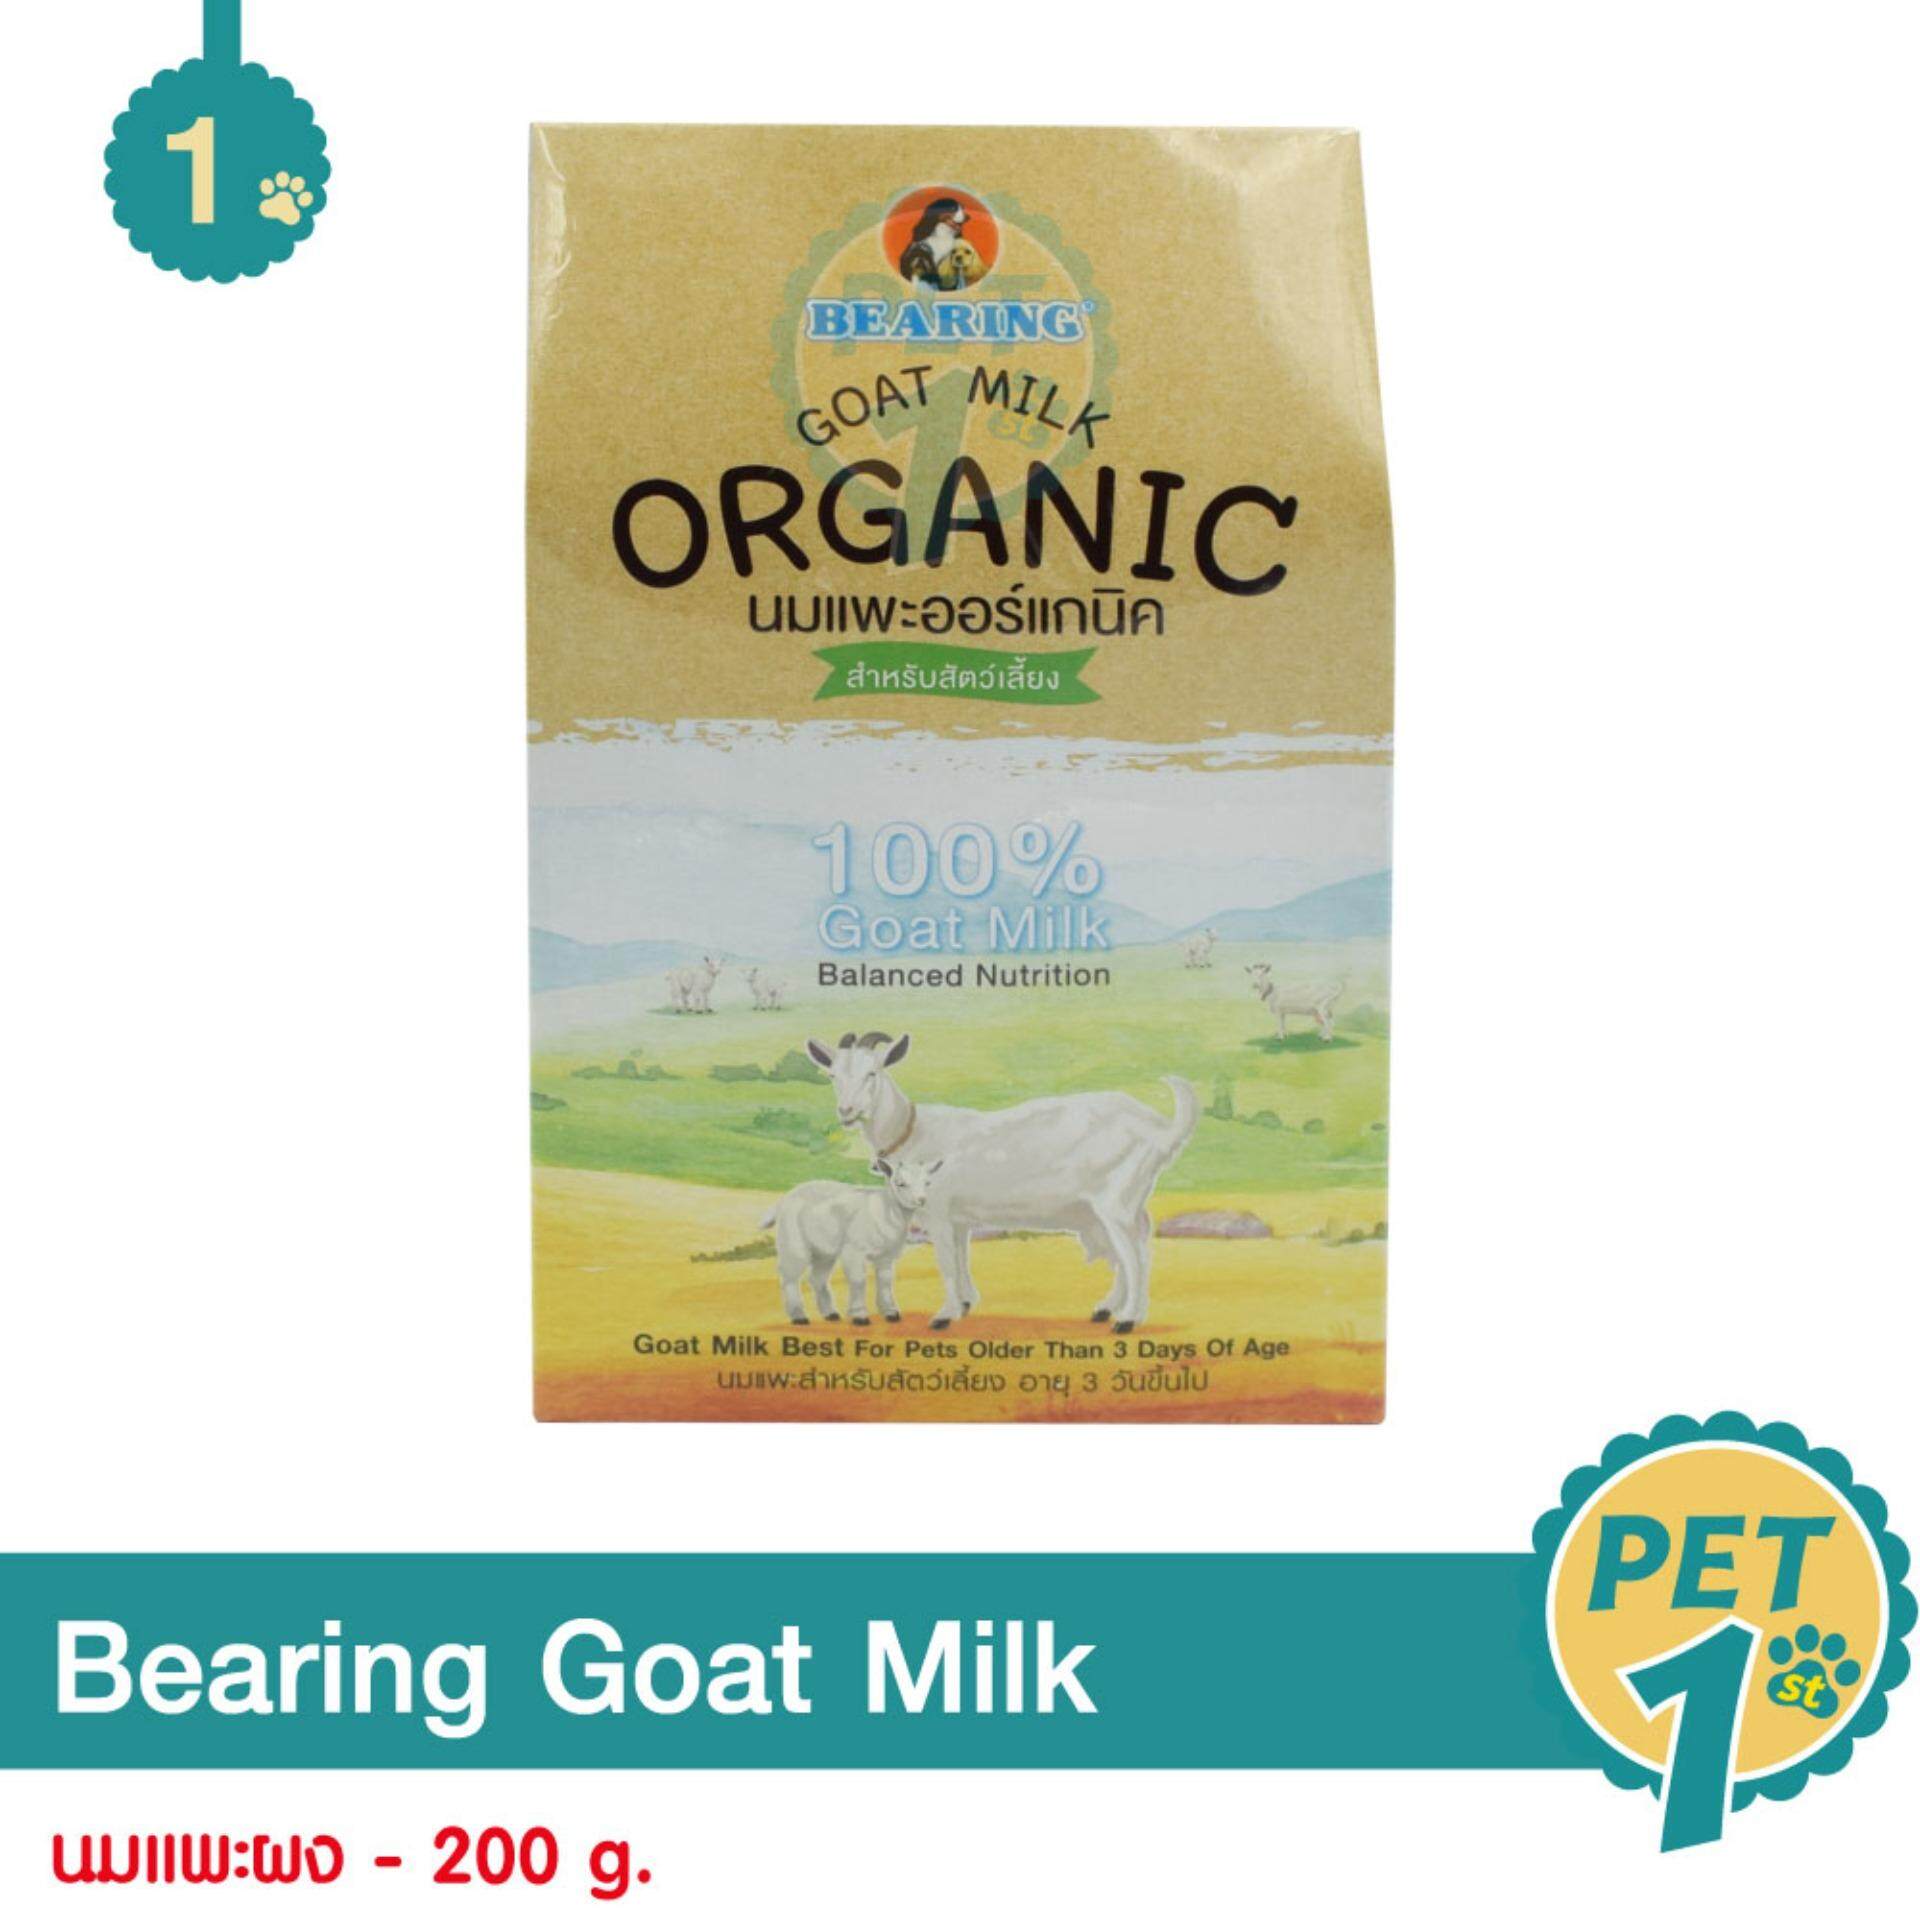 Bearing Goat Milk 200 g. นมแพะผง อาหารทดแทนนมแม่ สำหรับสุนัขและแมว อายุ 3 วันขึ้นไป 200 กรัม